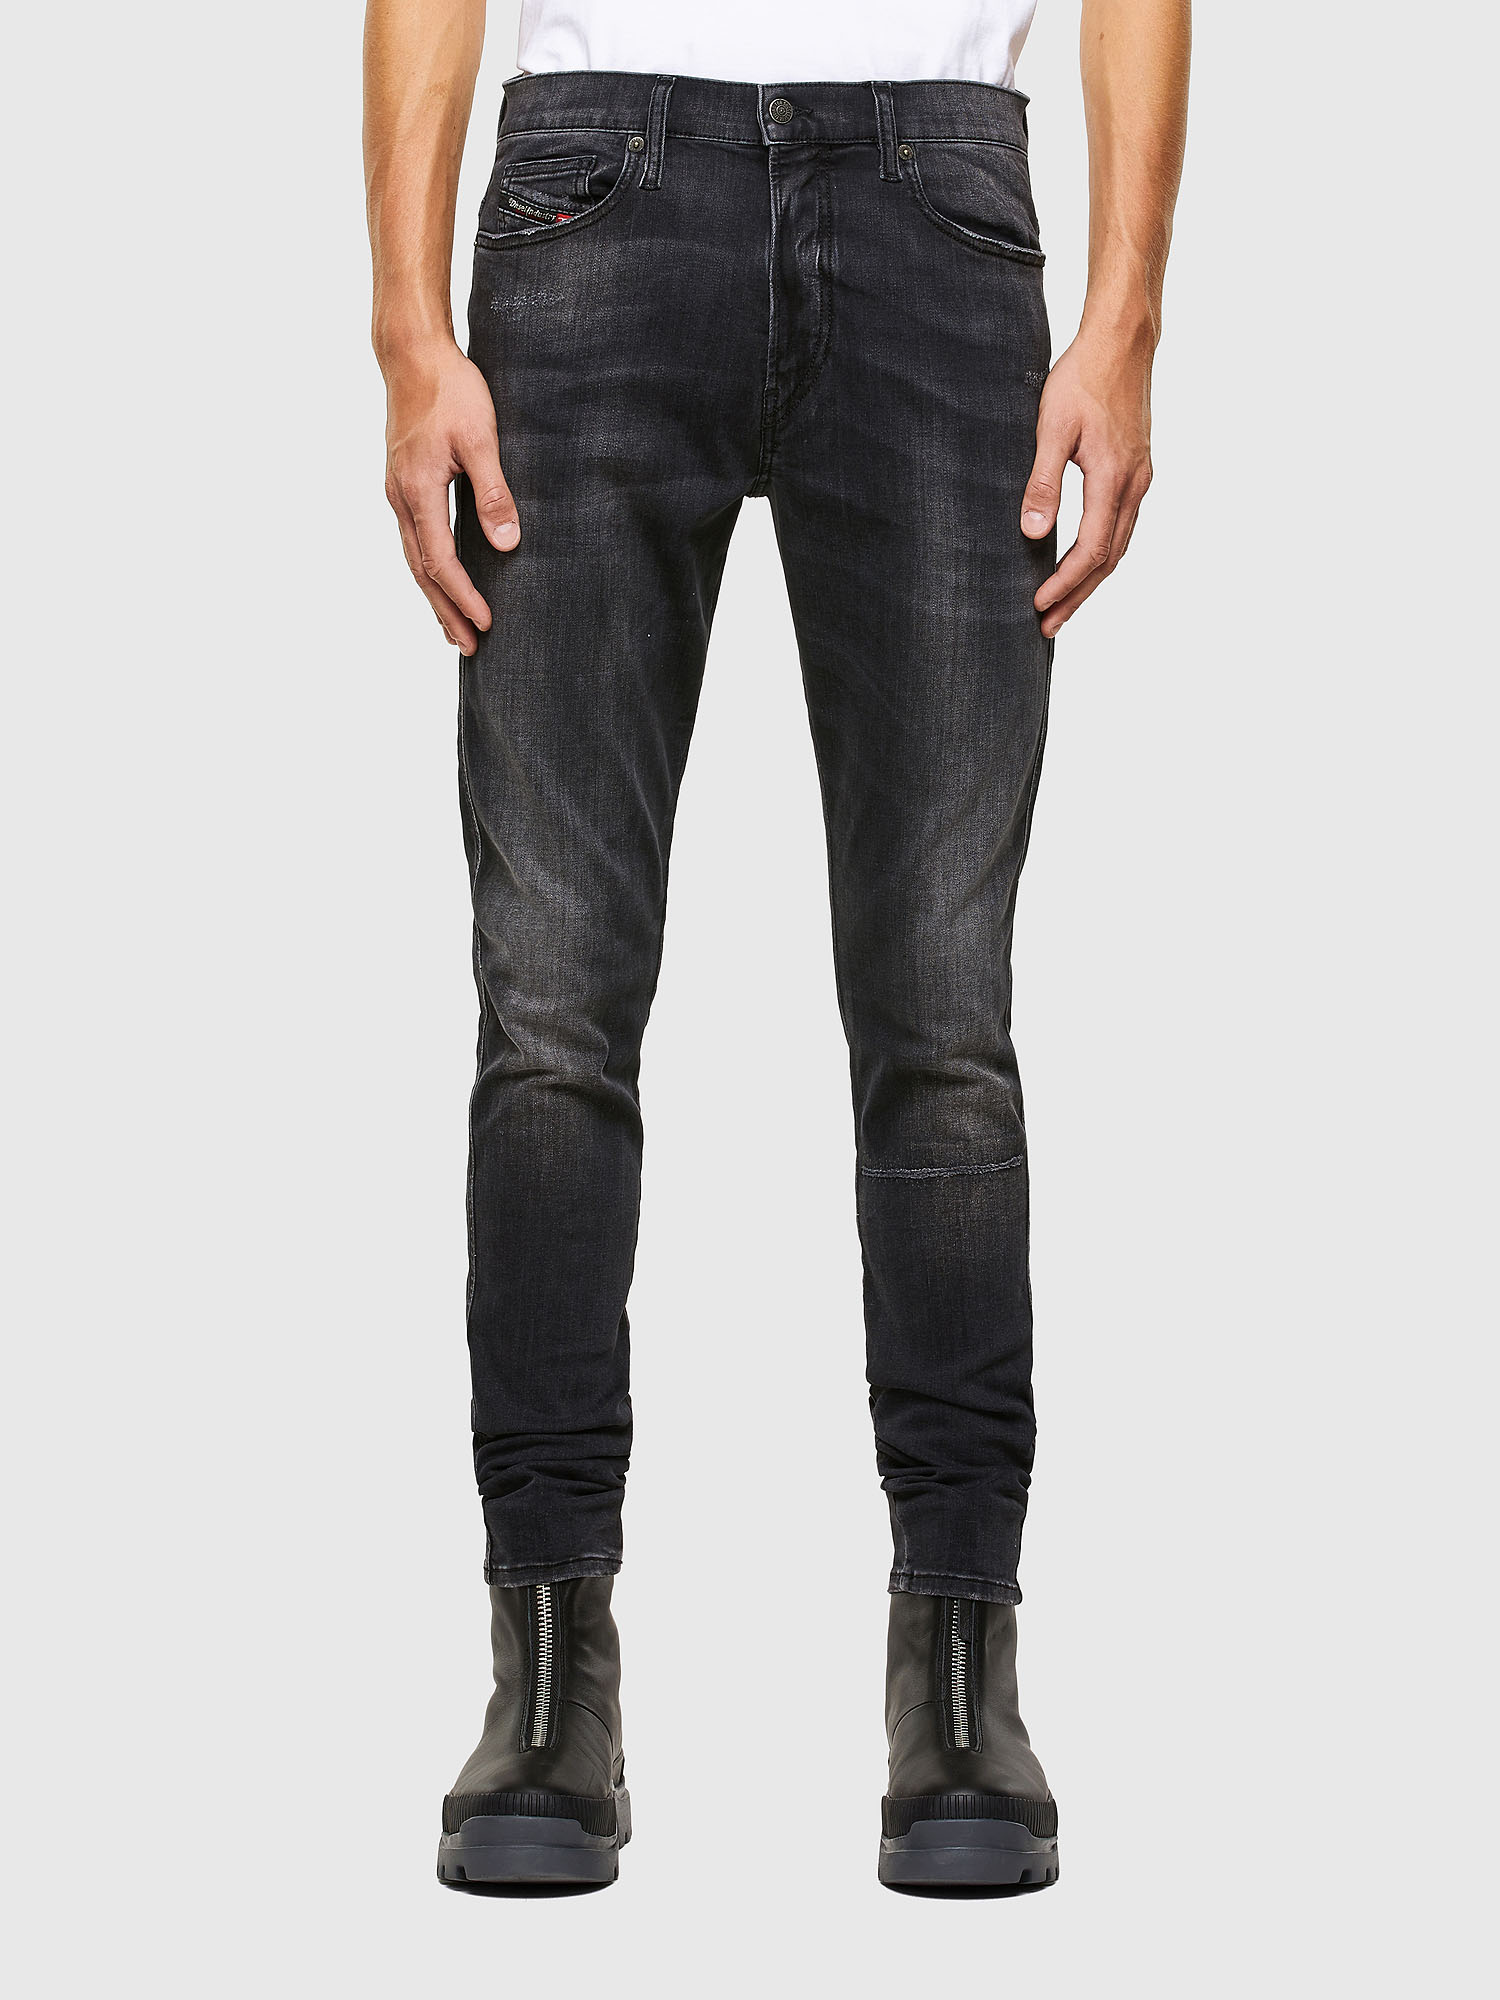 D-Istort 069RL Man: Skinny Black/Dark grey Jeans | Diesel